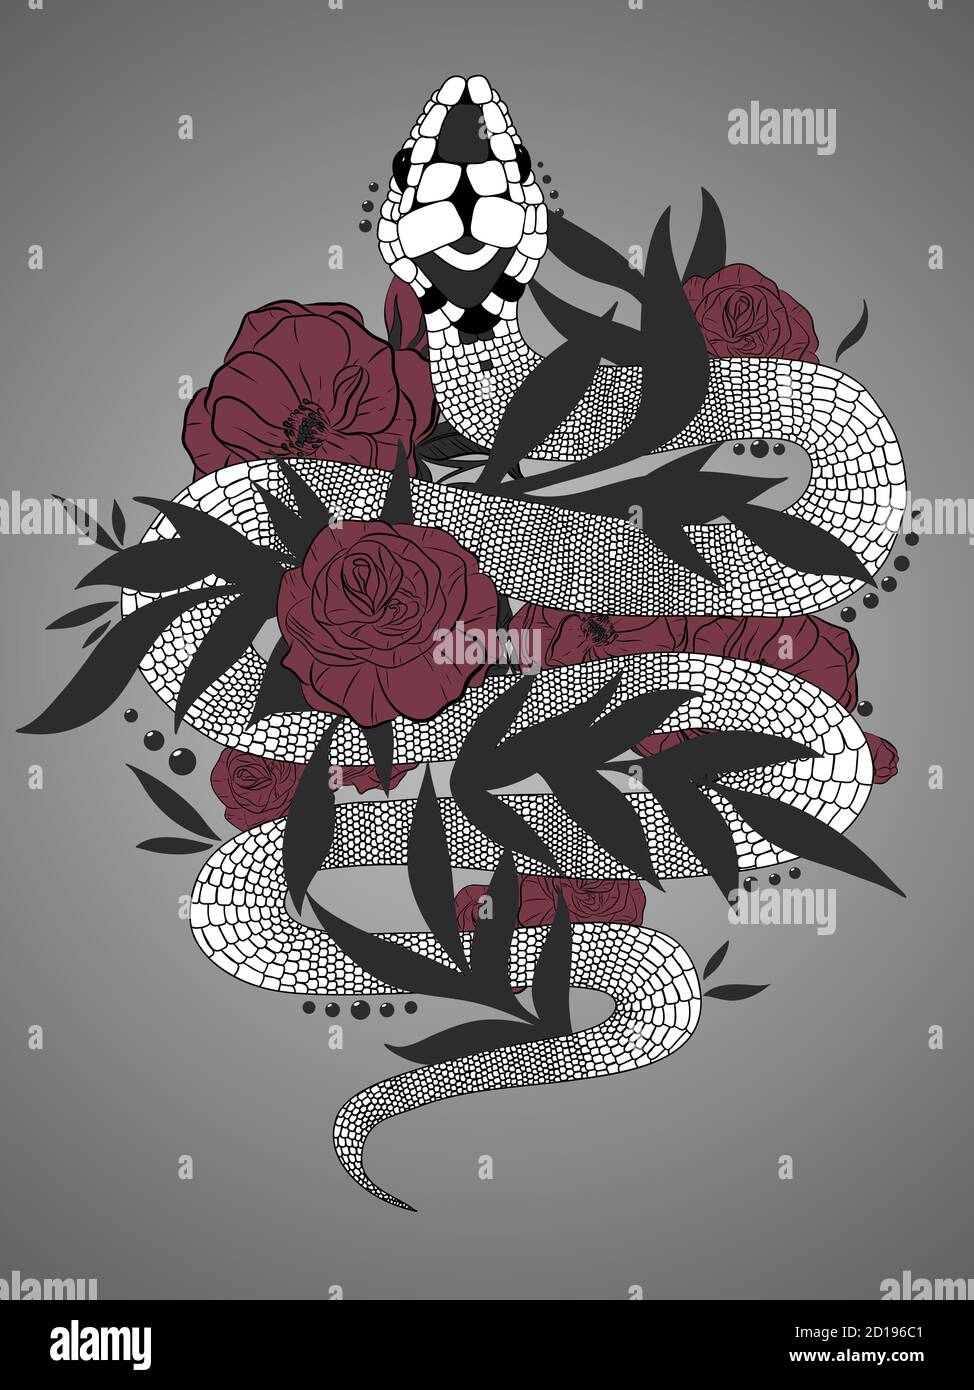 Handgezeichnete Vintage Schlange mit schwarzen Blättern und roten Rosen Illustration. Grafische Skizze für Poster, Tattoo, Kleidung, T-Shirt-Design, Pins, Patches Stock Vektor